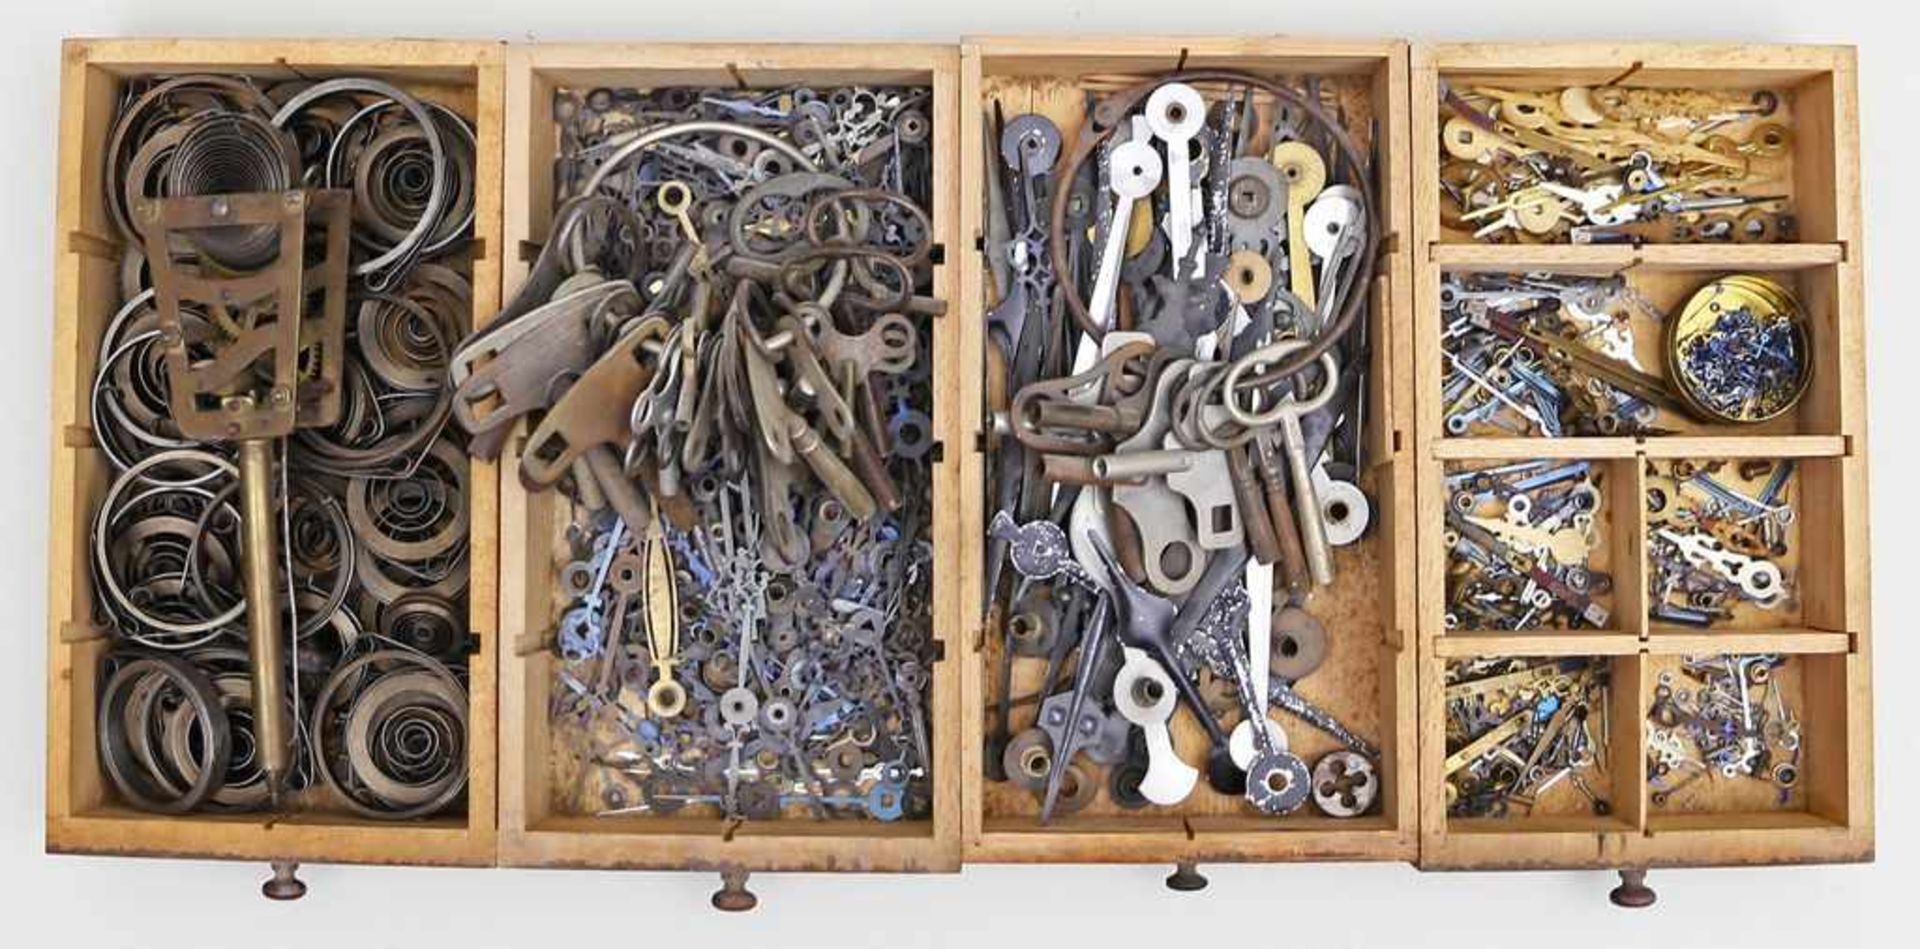 4 Kästen mit alten Uhren-Ersatzteilen eines Uhrmachers,wie Zeiger und Schlüssel in verschiedensten